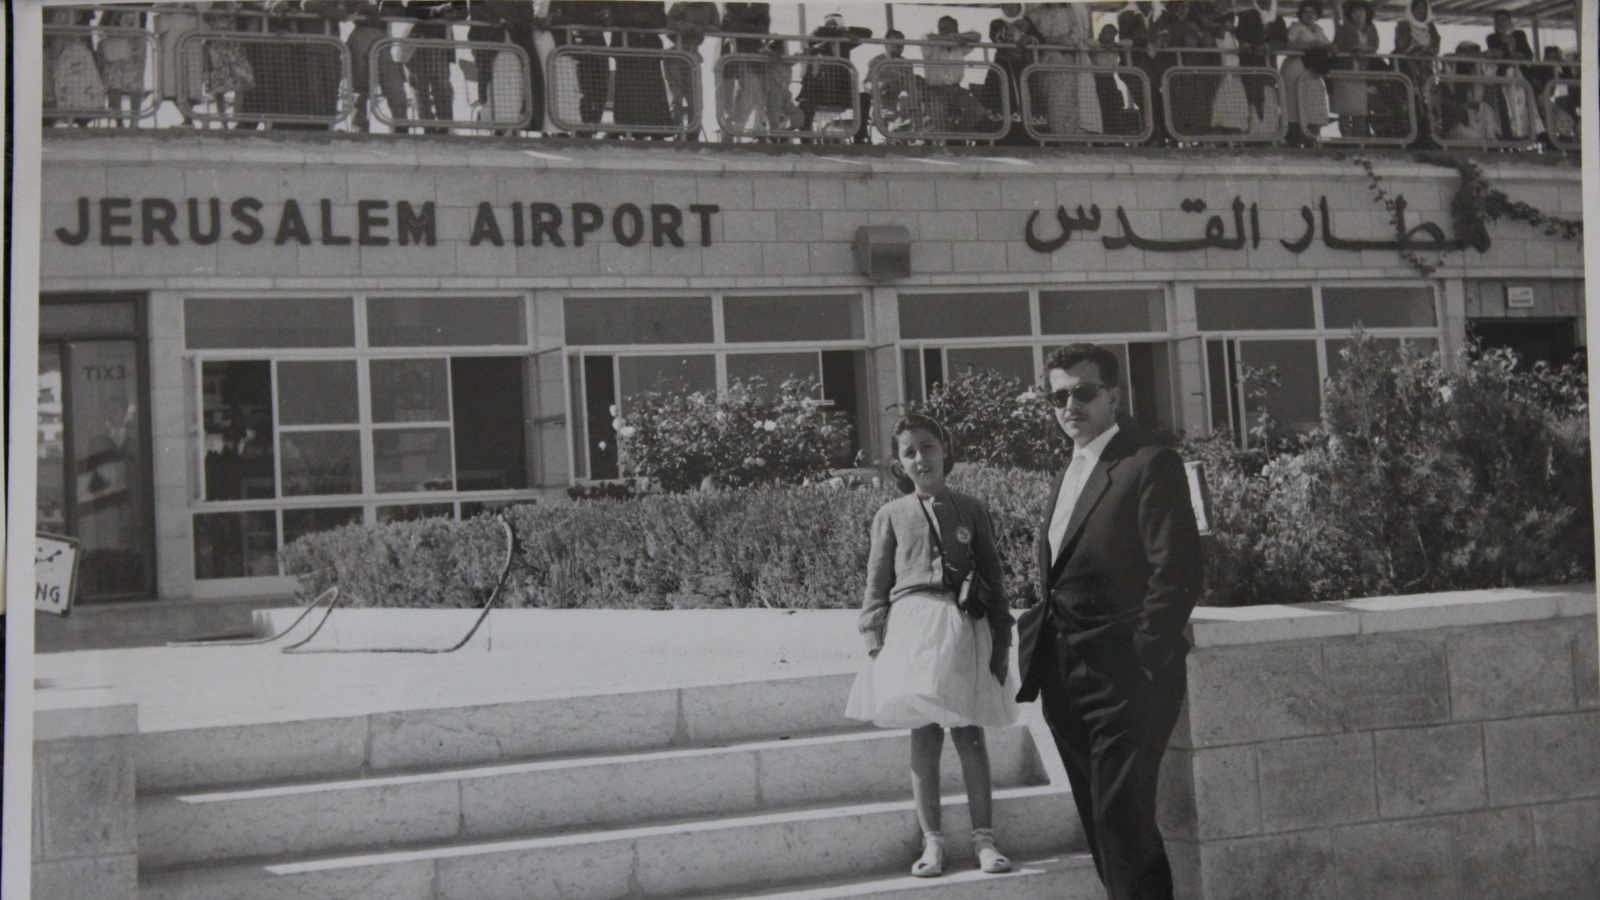 صورة من أرشيف عائلة فقوسة أمام مطار قلنديا الدولي في القدس (الجزيرة)